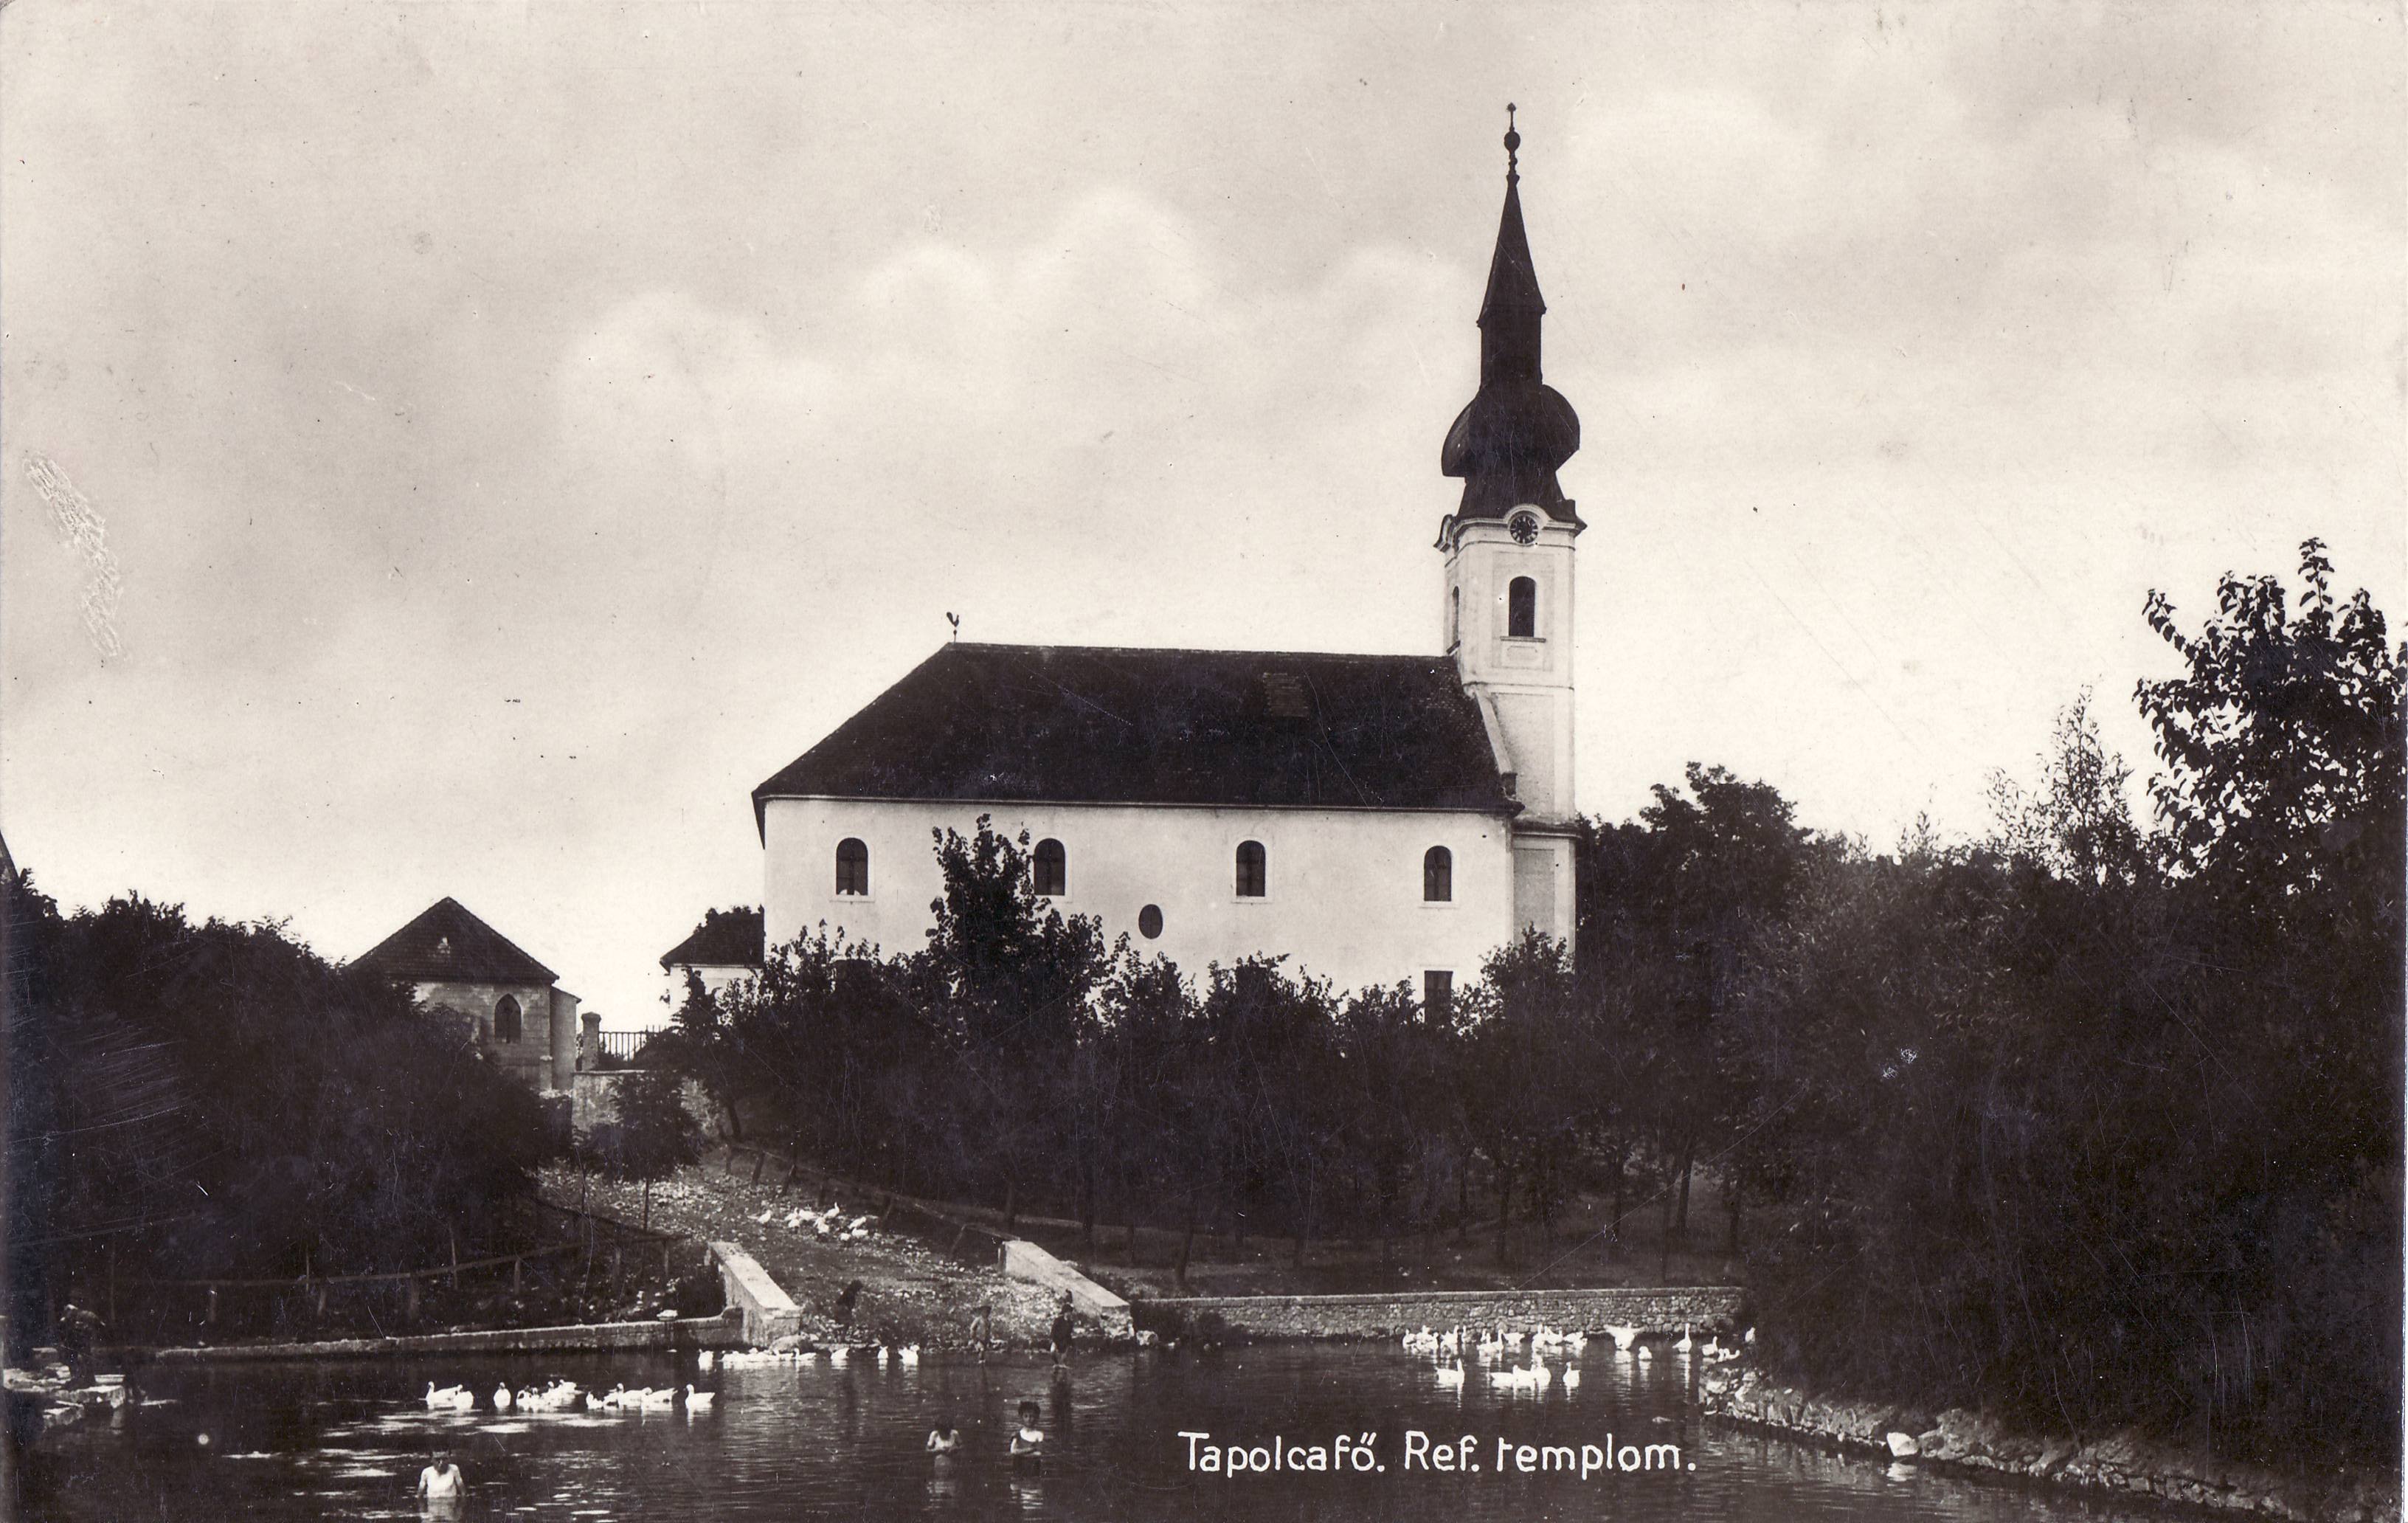 Tapolcafő – Ref. templom (Magyar Környezetvédelmi és Vízügyi Múzeum - Duna Múzeum CC BY-NC-SA)